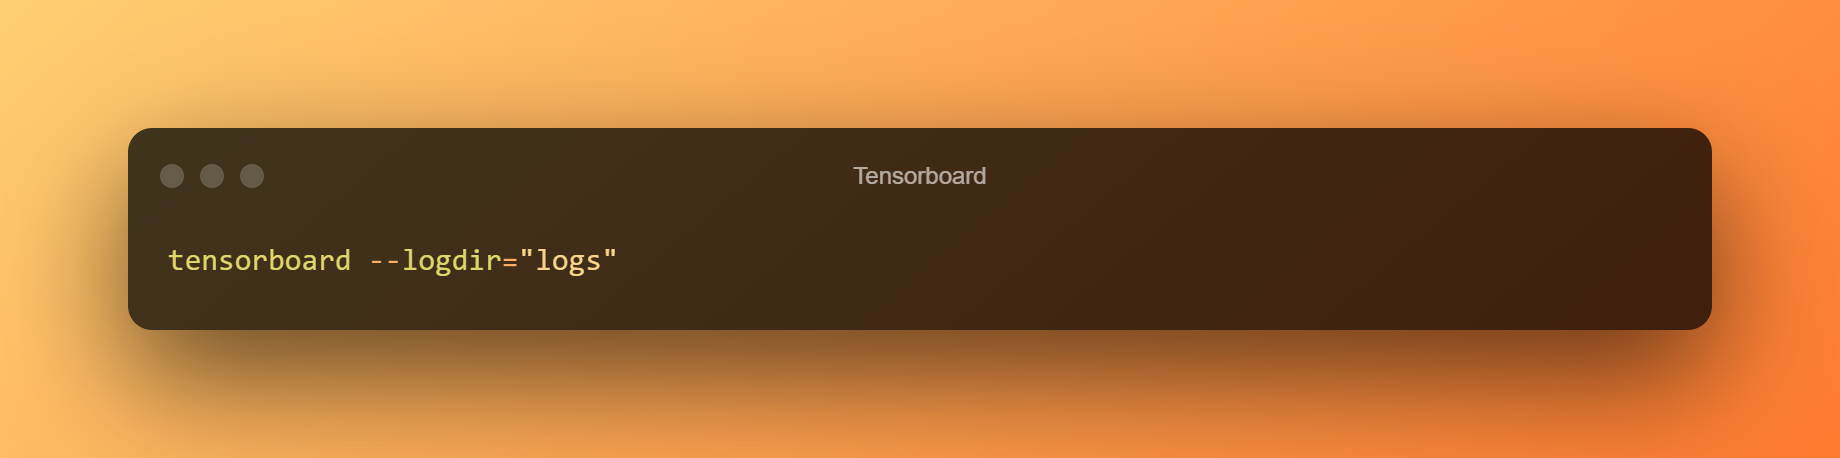 Tensorboard 1